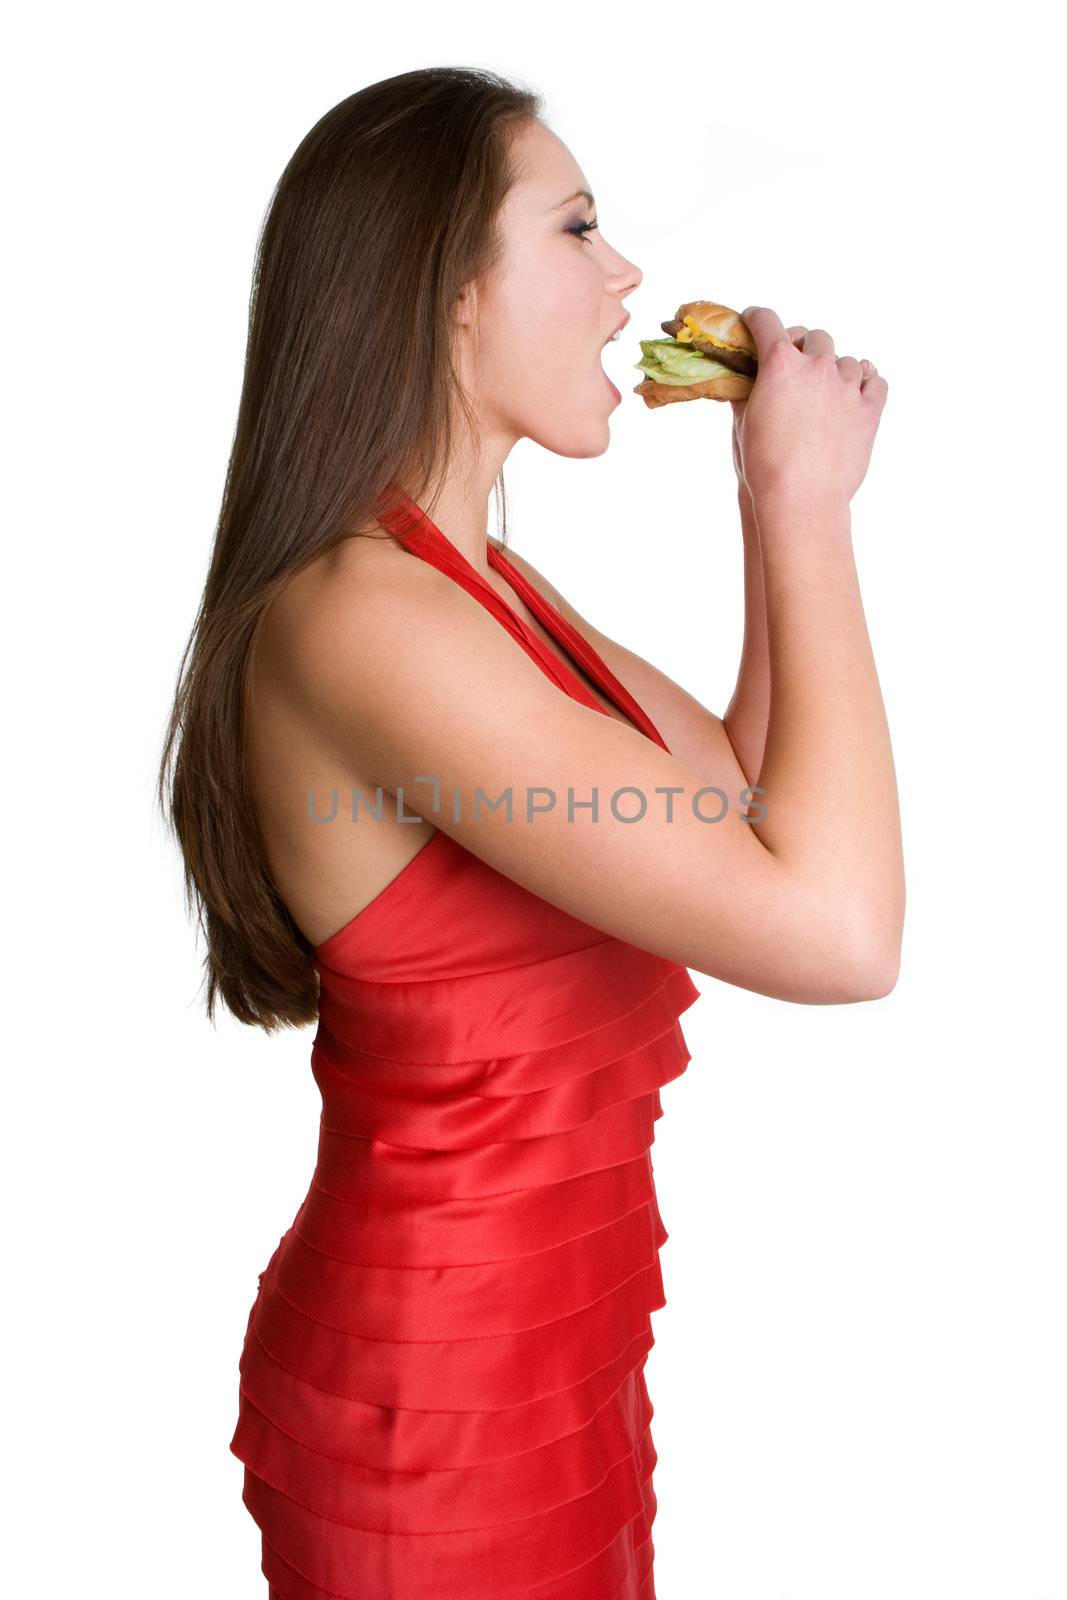 Burger Woman by keeweeboy